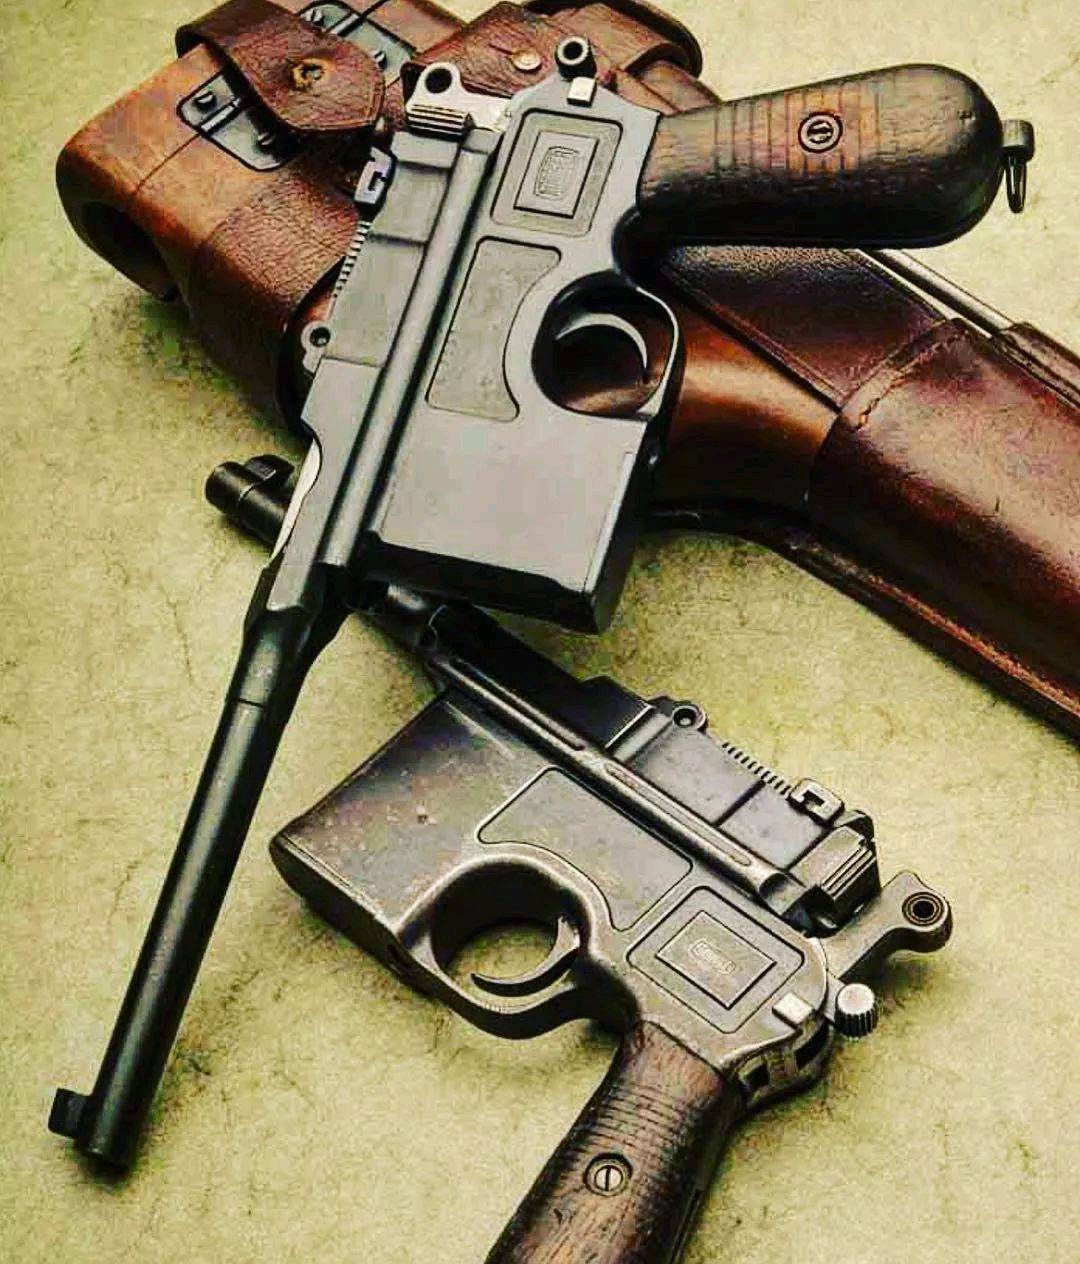 这些结构原理的发明,使得毛瑟军用手枪比同时期的其他手枪性能更为